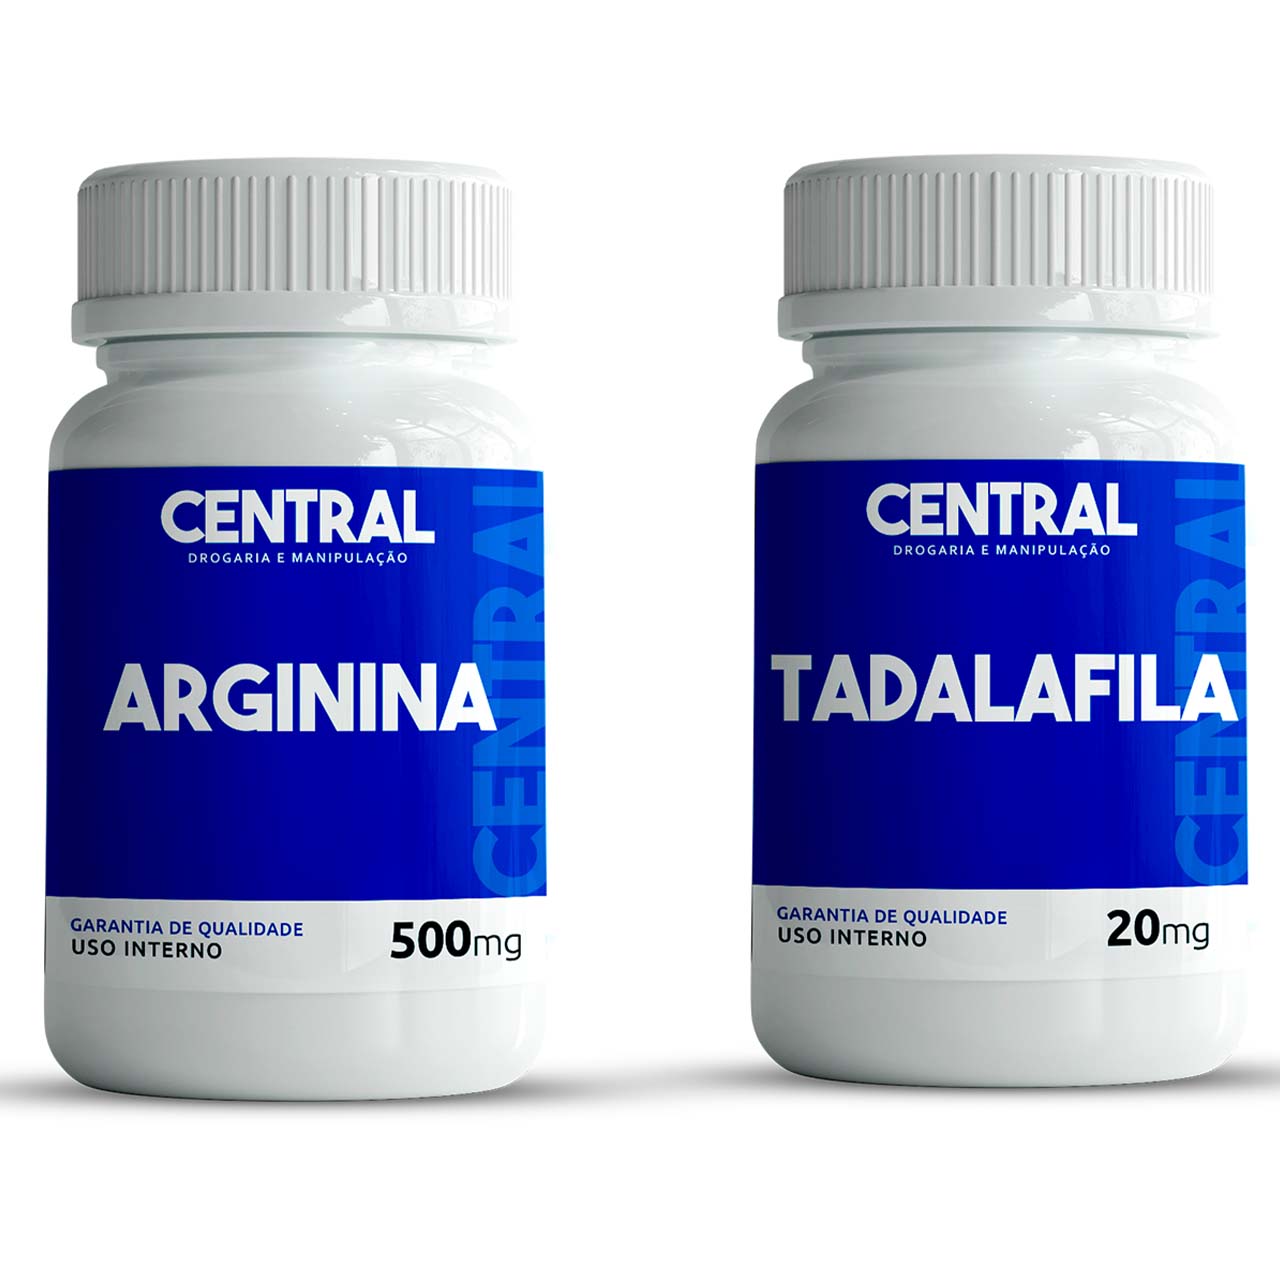 Tadalafila 20mg - 120 cápsulas + Arginina 500mg - 120 cápsulas